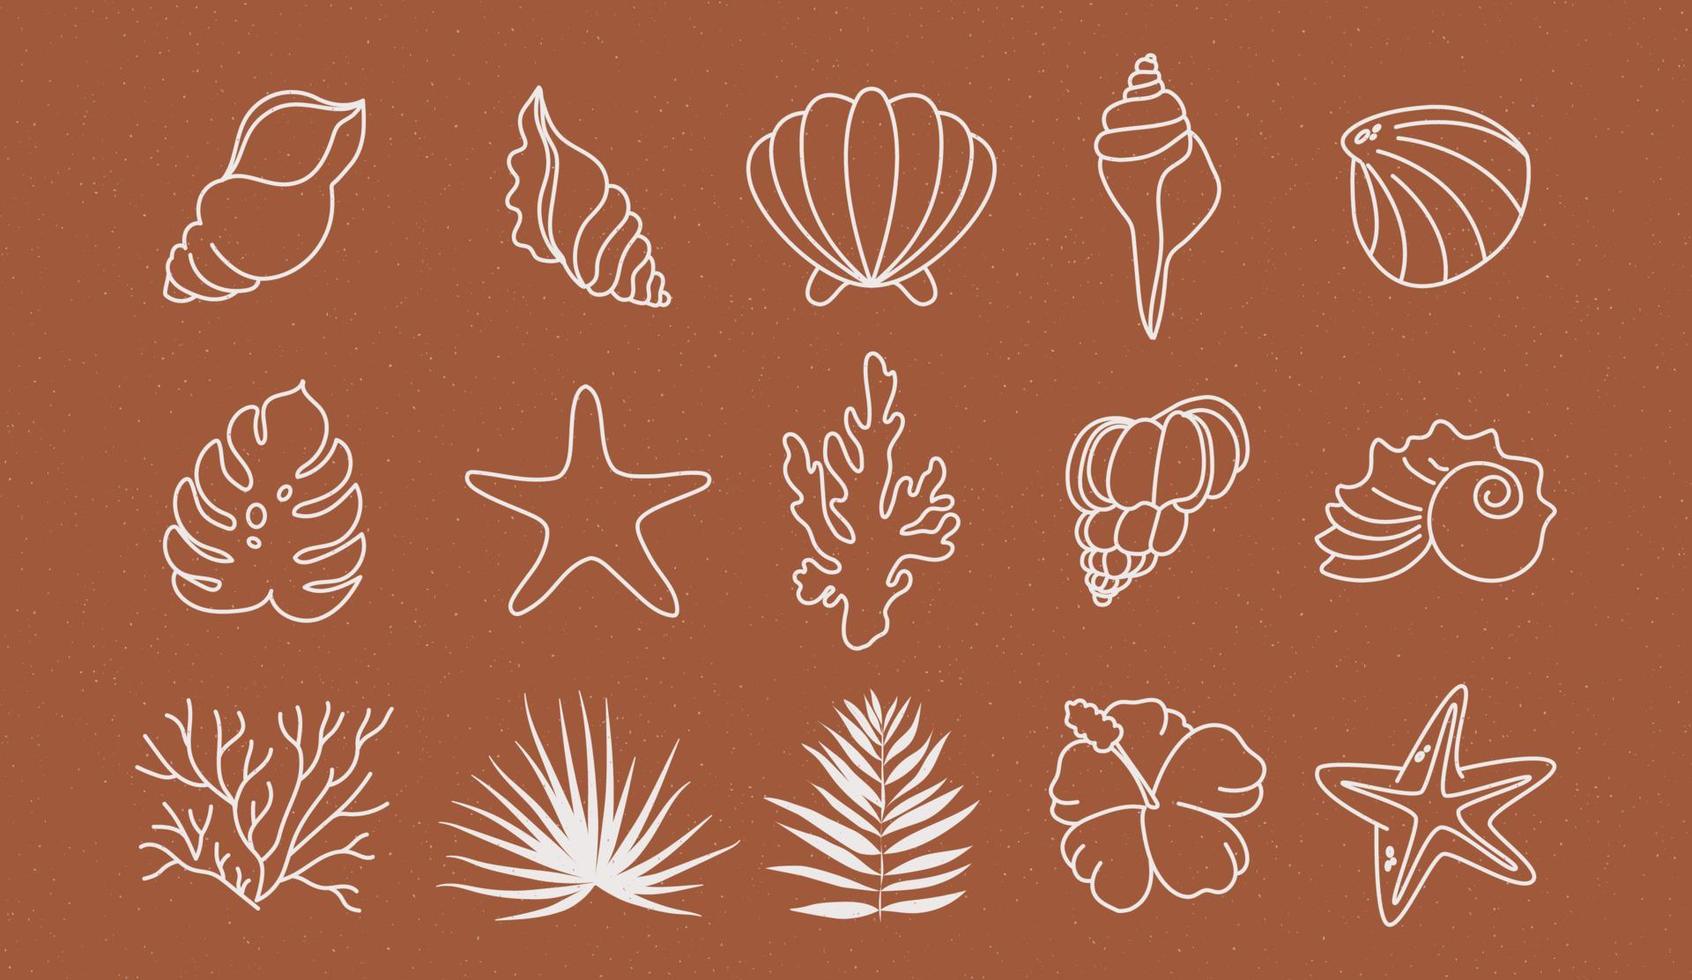 icônes d'été serties de coraux, de feuilles de palmier et de coquillages. jolie mer, océan et fond marron avec du sable. pour les médias sociaux, la location de logement et les services de voyage. vecteur